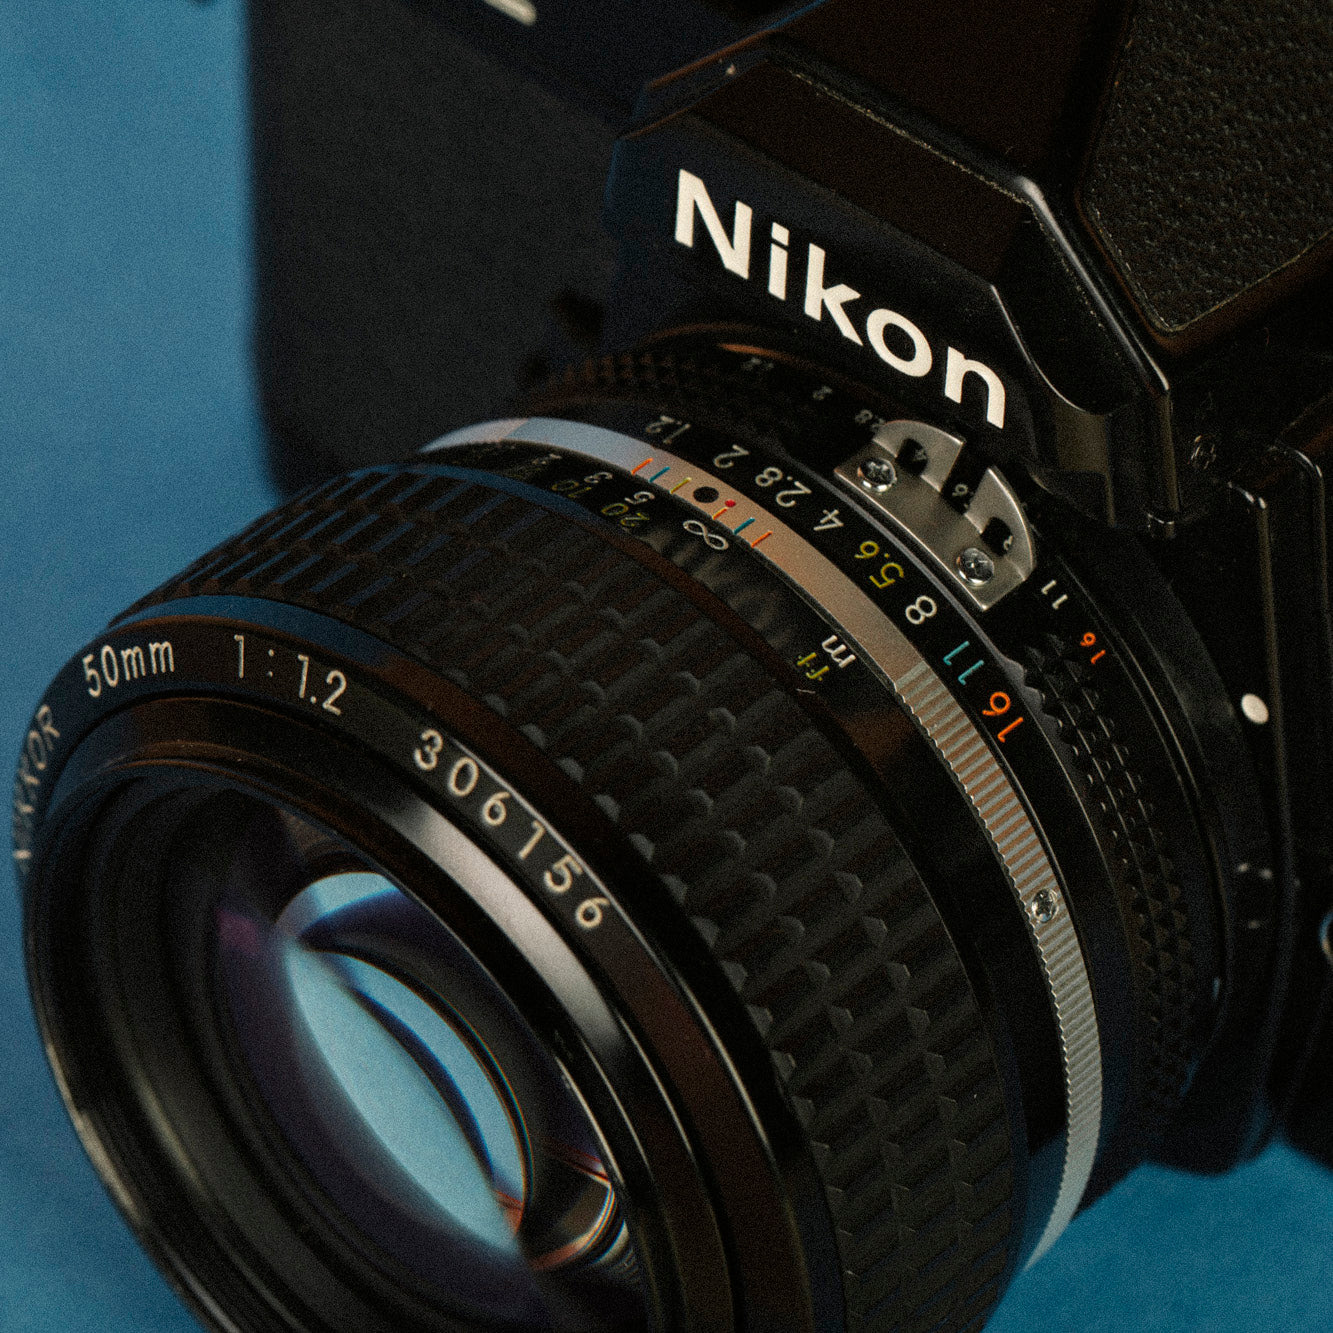 Nikon FM2 + 50mm f/1:1.2